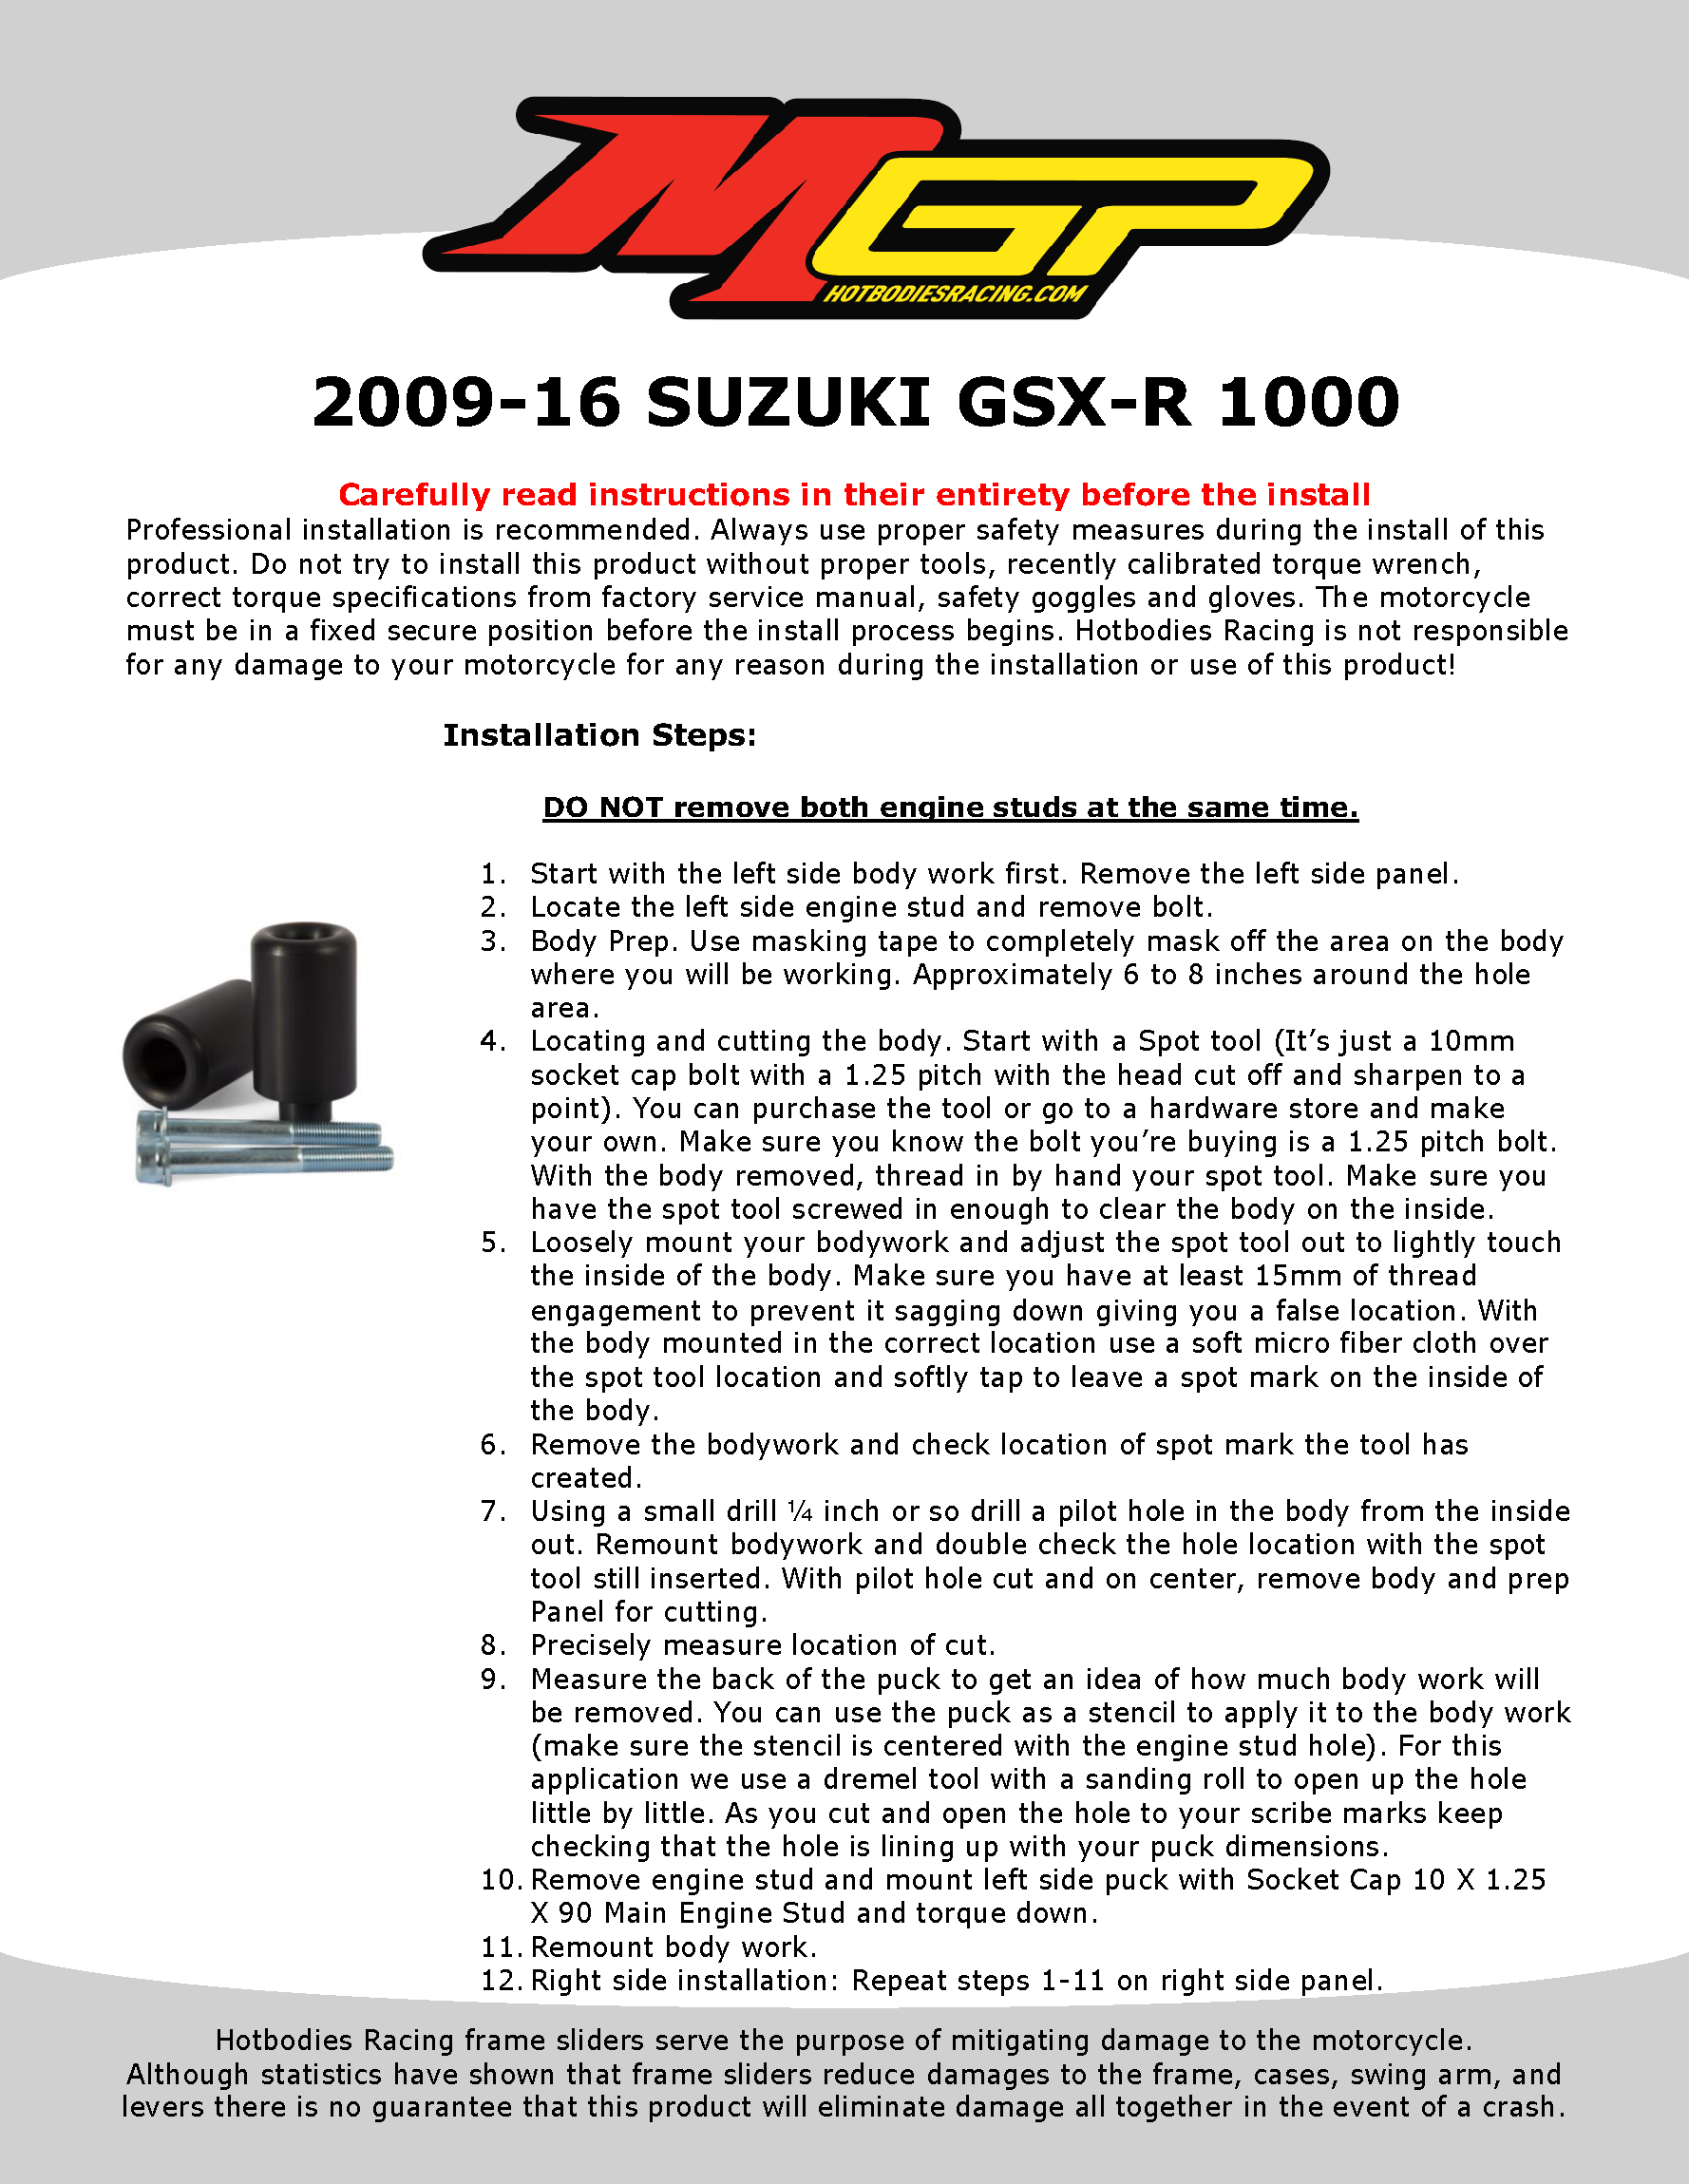 

2009-16 SUZUKI GSX-R 1000 Installation

